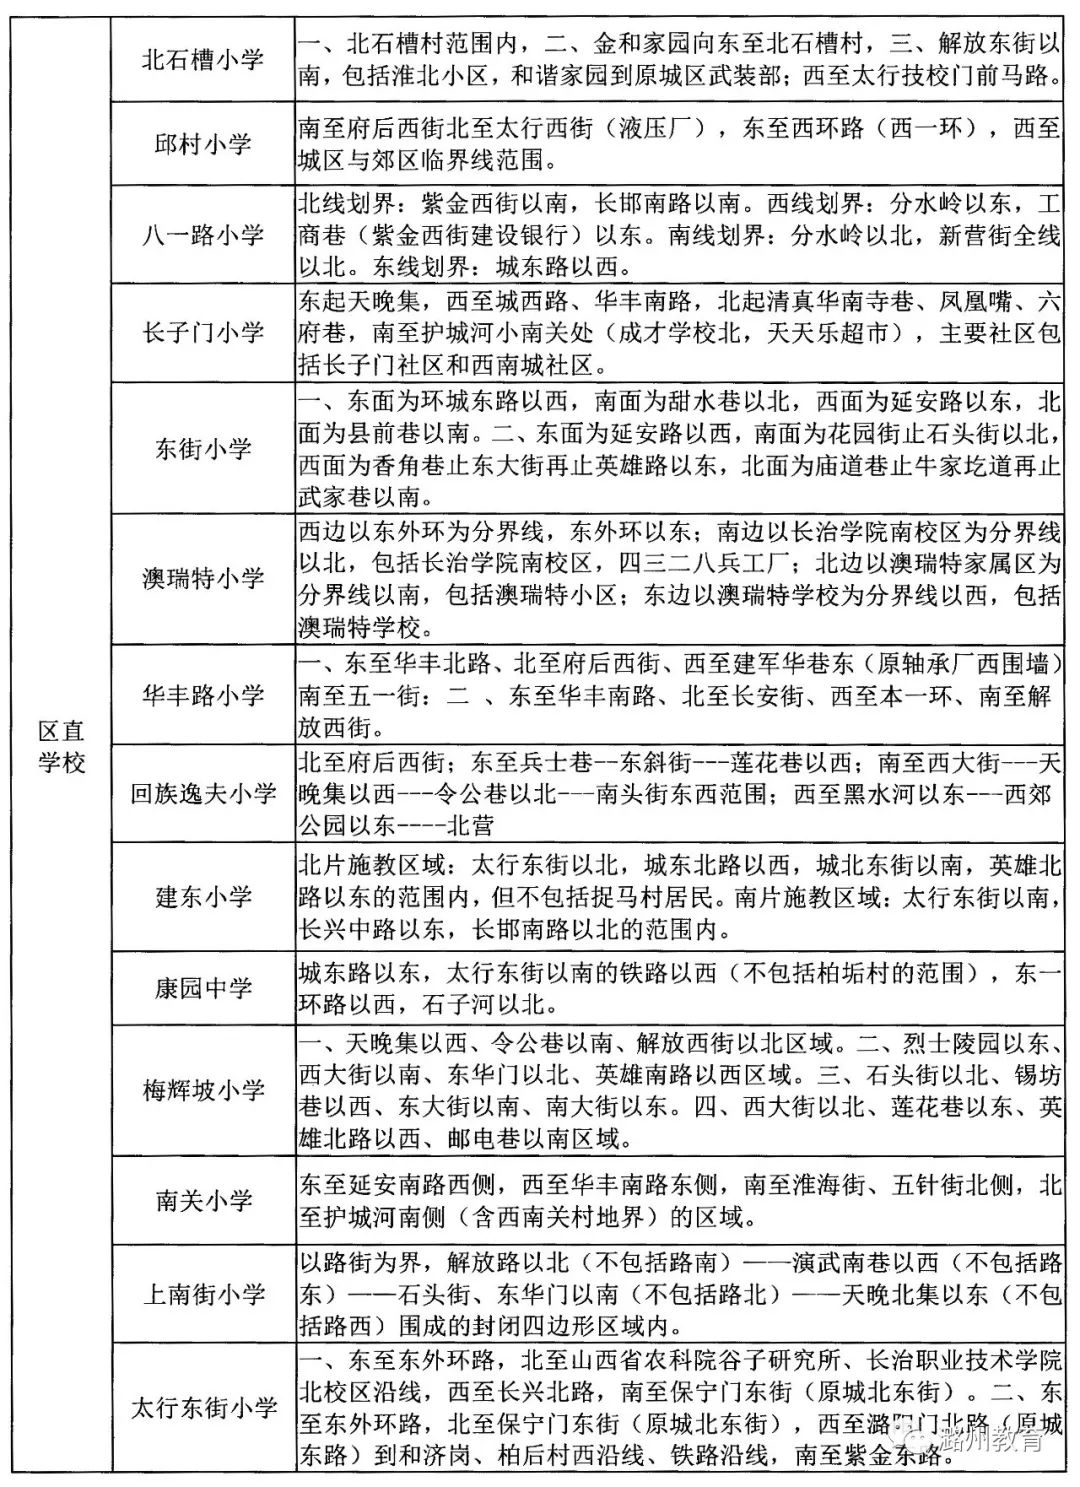 长治潞州区2019年小学招生入学小升初工作实施办法公布附最新学区划分